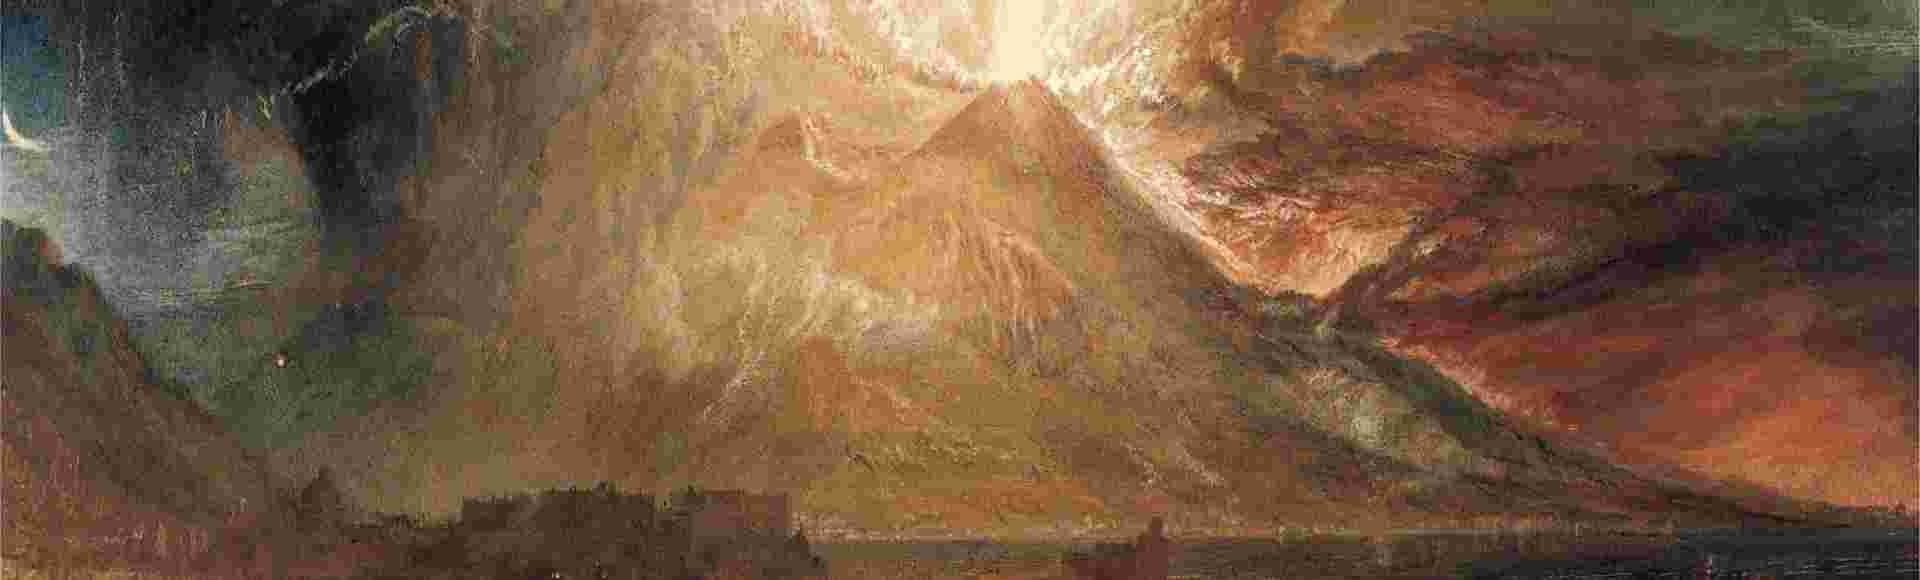 Turner's Vesuvius in Eruption.